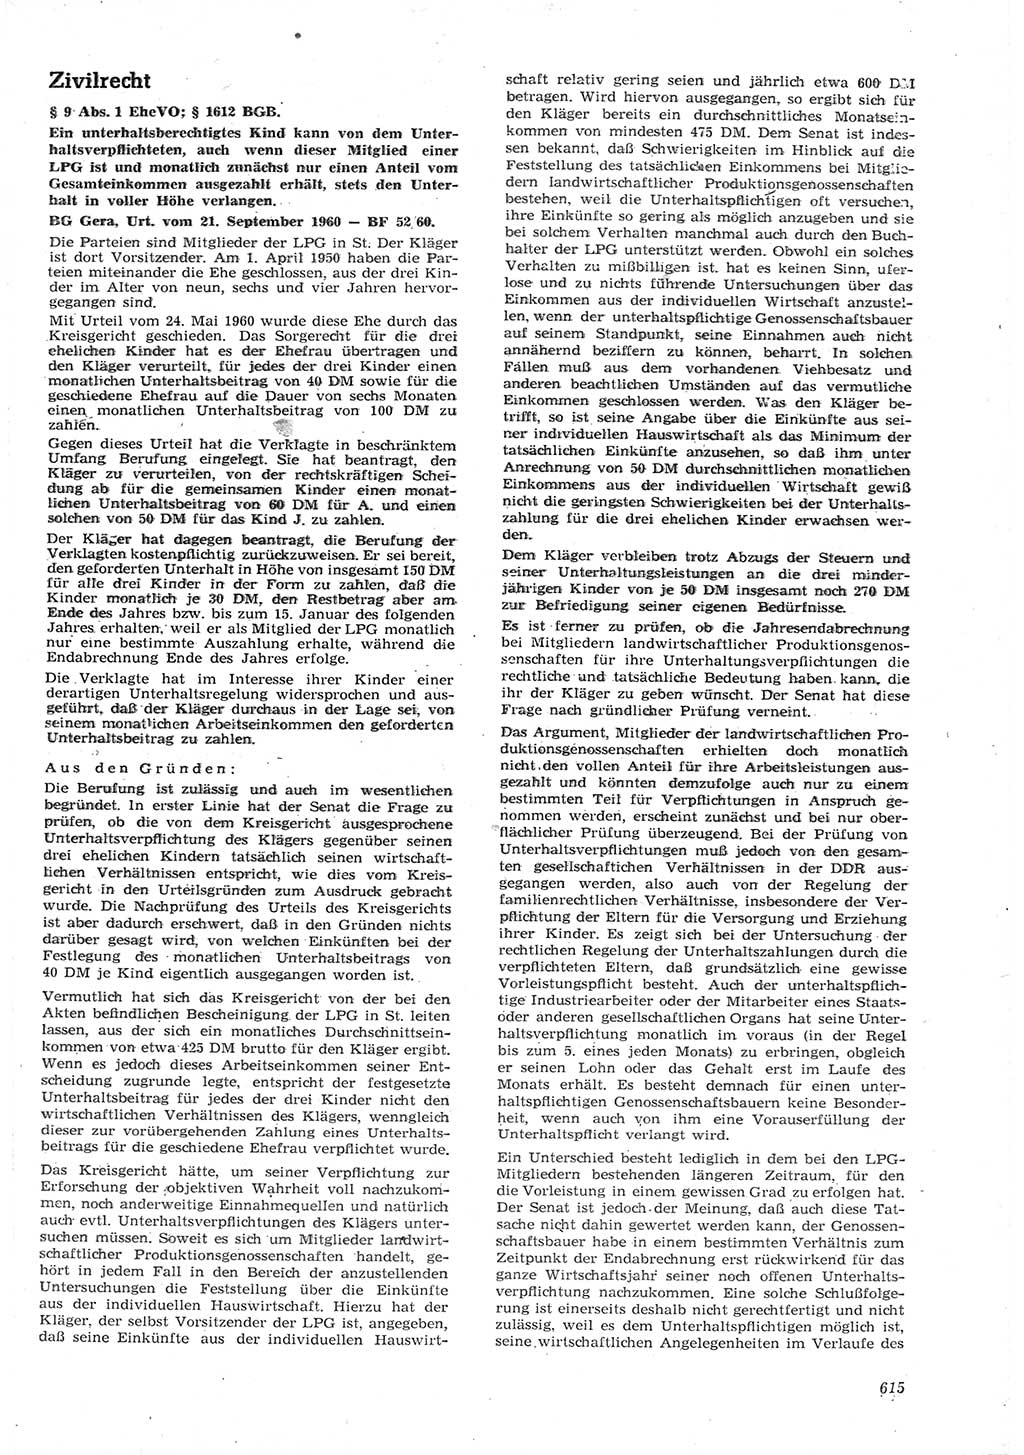 Neue Justiz (NJ), Zeitschrift für Recht und Rechtswissenschaft [Deutsche Demokratische Republik (DDR)], 15. Jahrgang 1961, Seite 615 (NJ DDR 1961, S. 615)